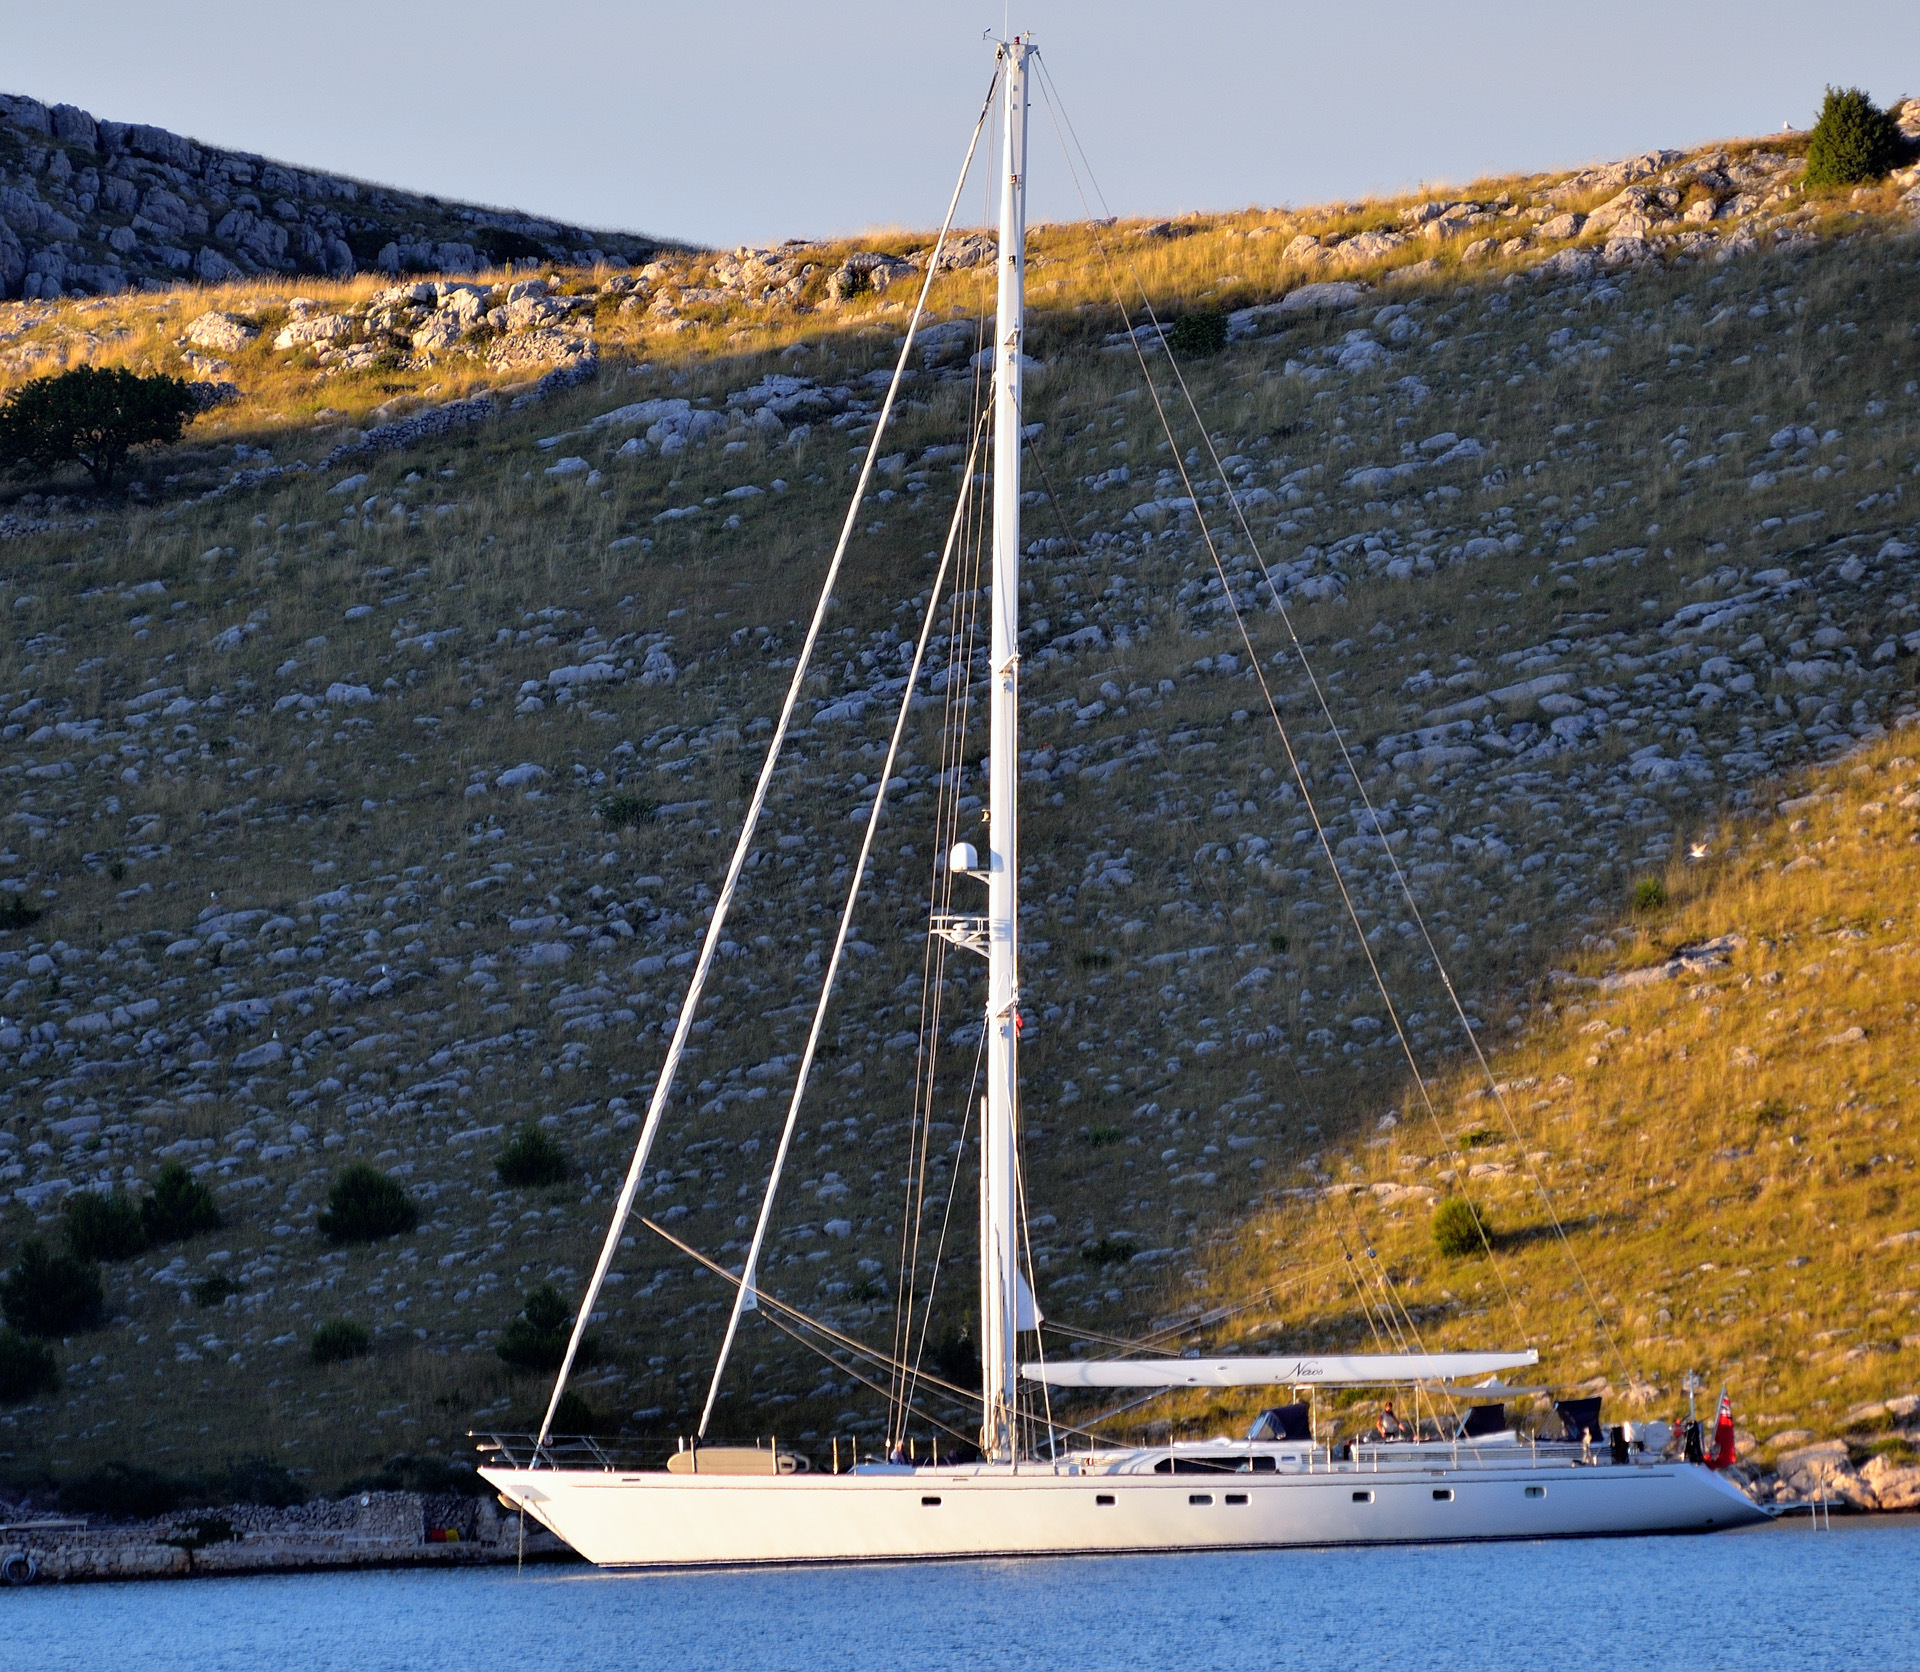 Kurz vor unserem Tagesziel sehen wir diese Superyacht in einer Bucht der Insel Katina. Es ist die Naos, 32,15 m lang,Bj. 1992, Heimathafen Venedig. Es handelt sich auch um eine Charter-Yacht, allerdings für 6 Gäste und 4 Besatzungsmitglieder, also eine andere Liga...